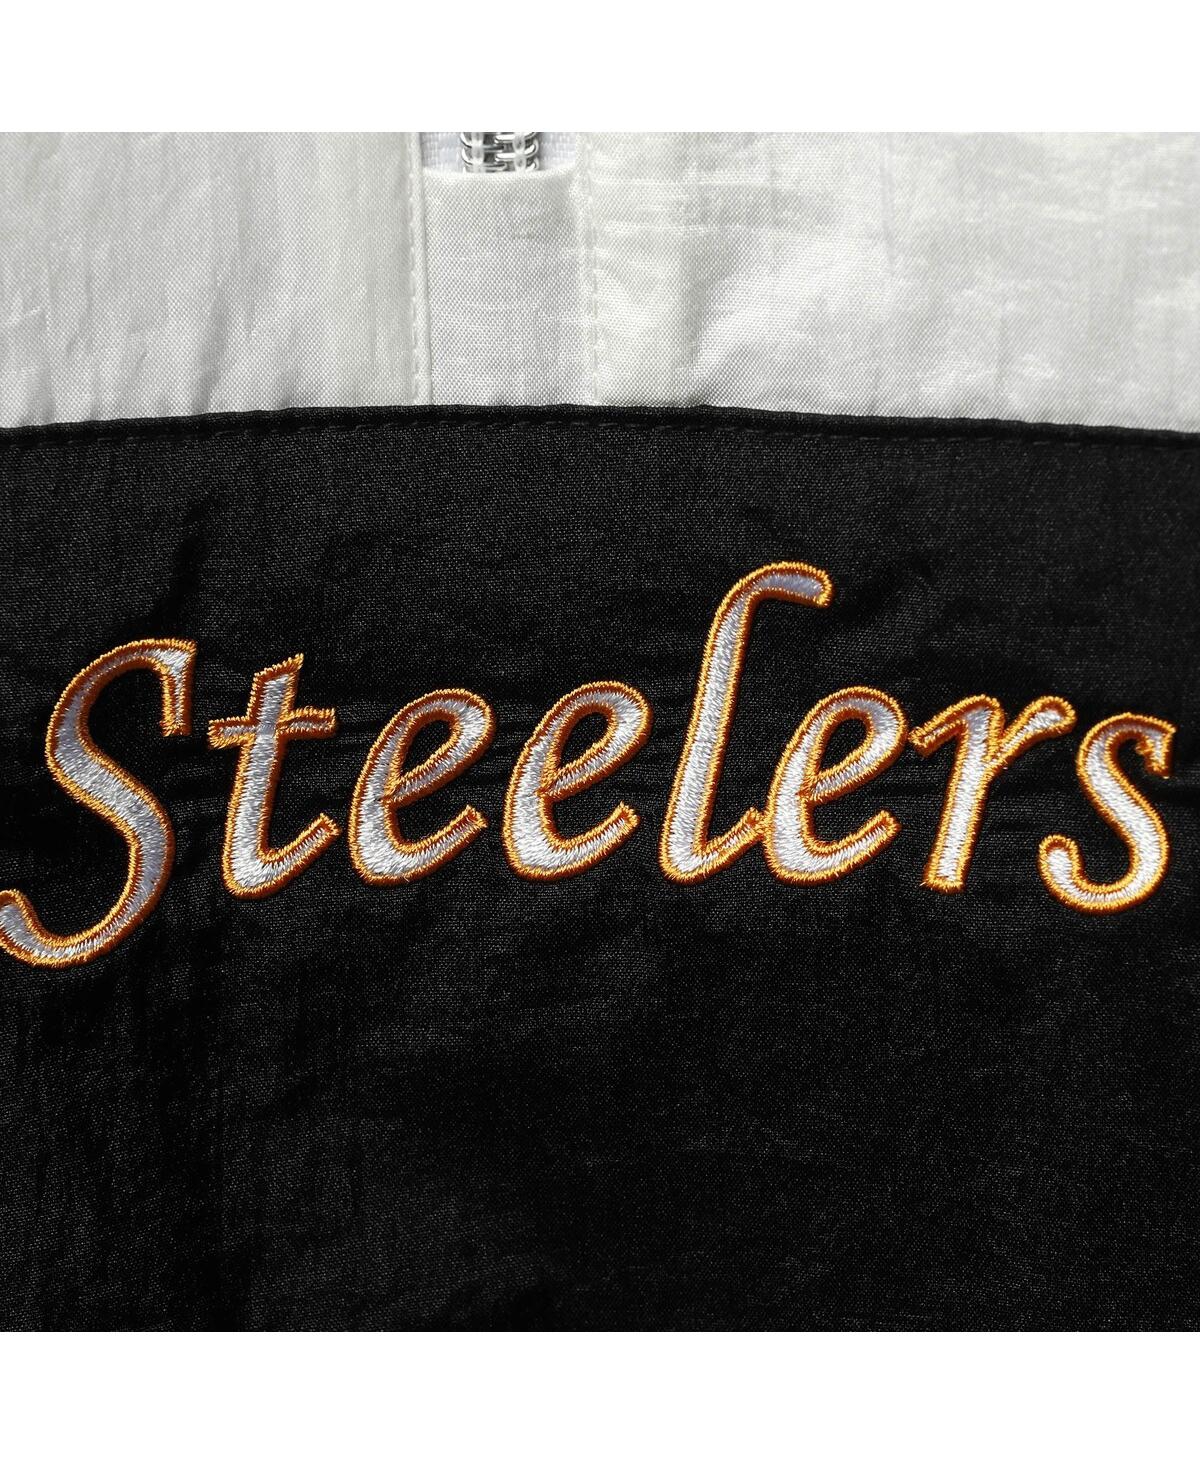 Shop Mitchell & Ness Women's  Black Pittsburgh Steelers Half-zip Windbreaker Hoodie Jacket